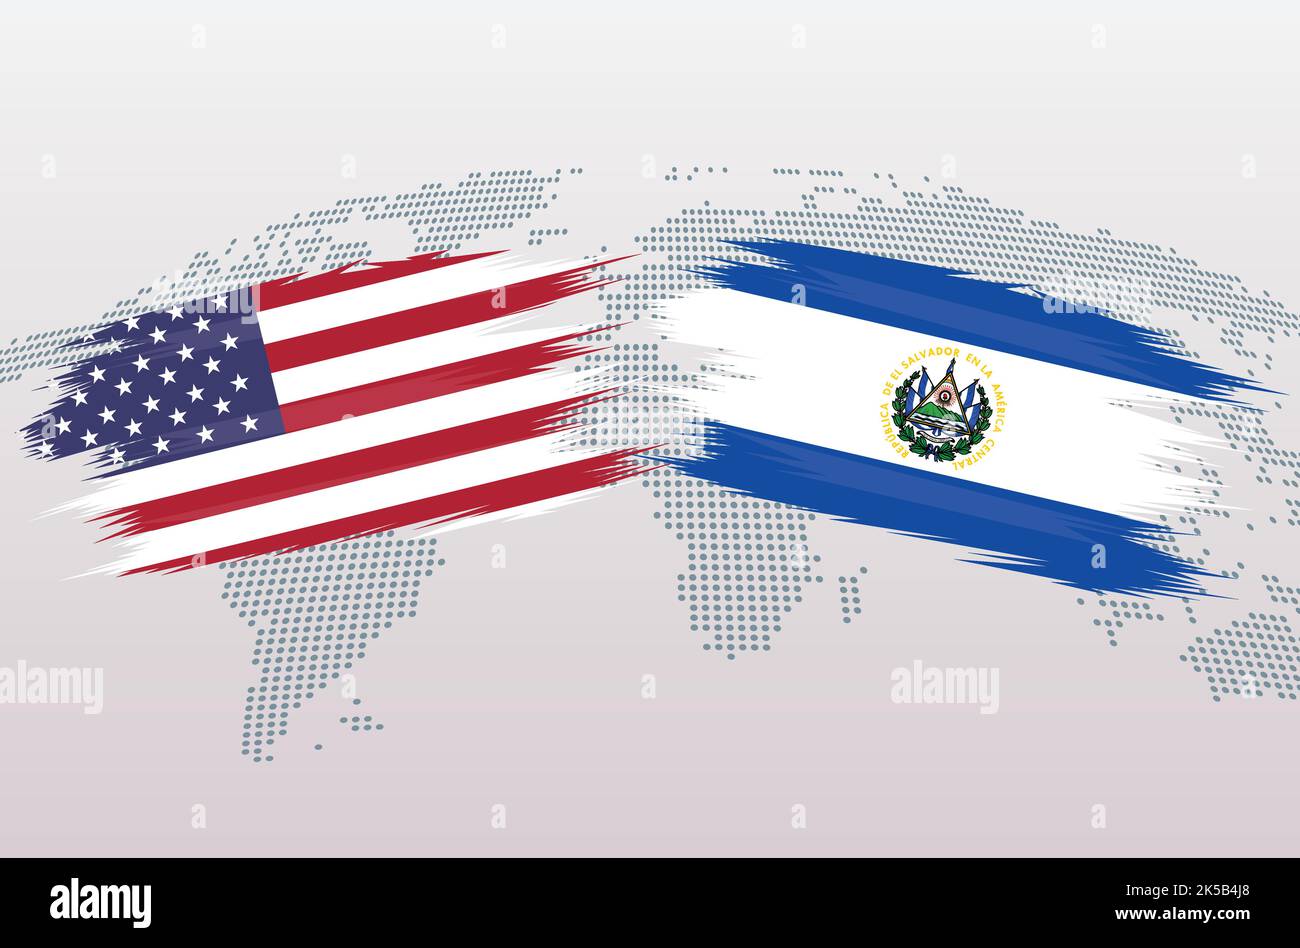 Drapeaux États-Unis contre El Salvador. Les États-Unis d'Amérique contre les drapeaux d'El Salvador, isolés sur fond gris de la carte du monde. Illustration vectorielle. Illustration de Vecteur